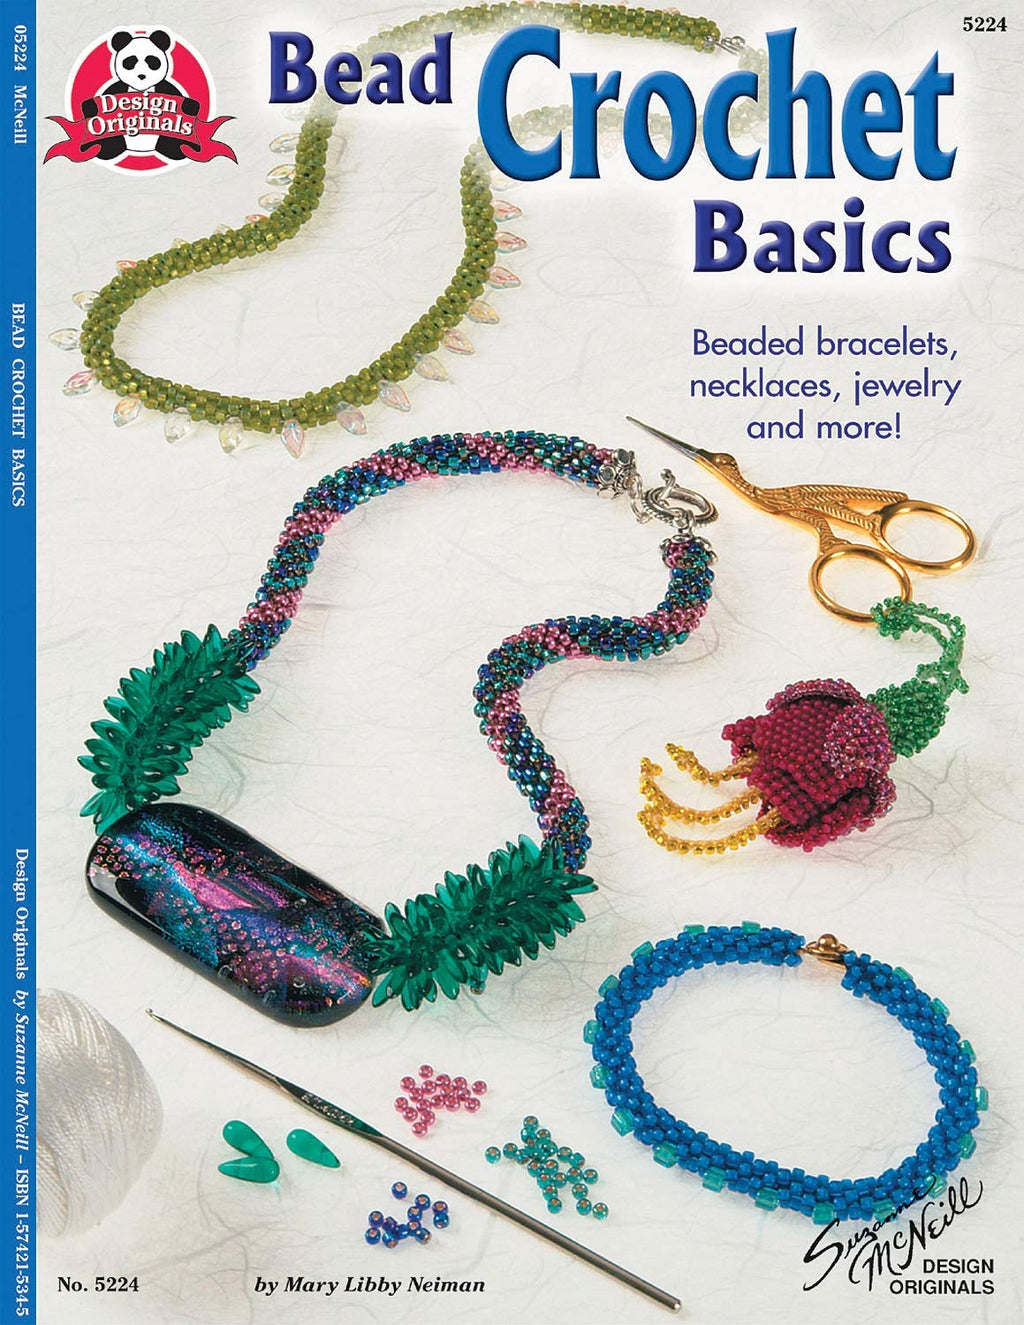 Bead Crochet Basics book. ISBN  1574215345. A Design Originals publication.